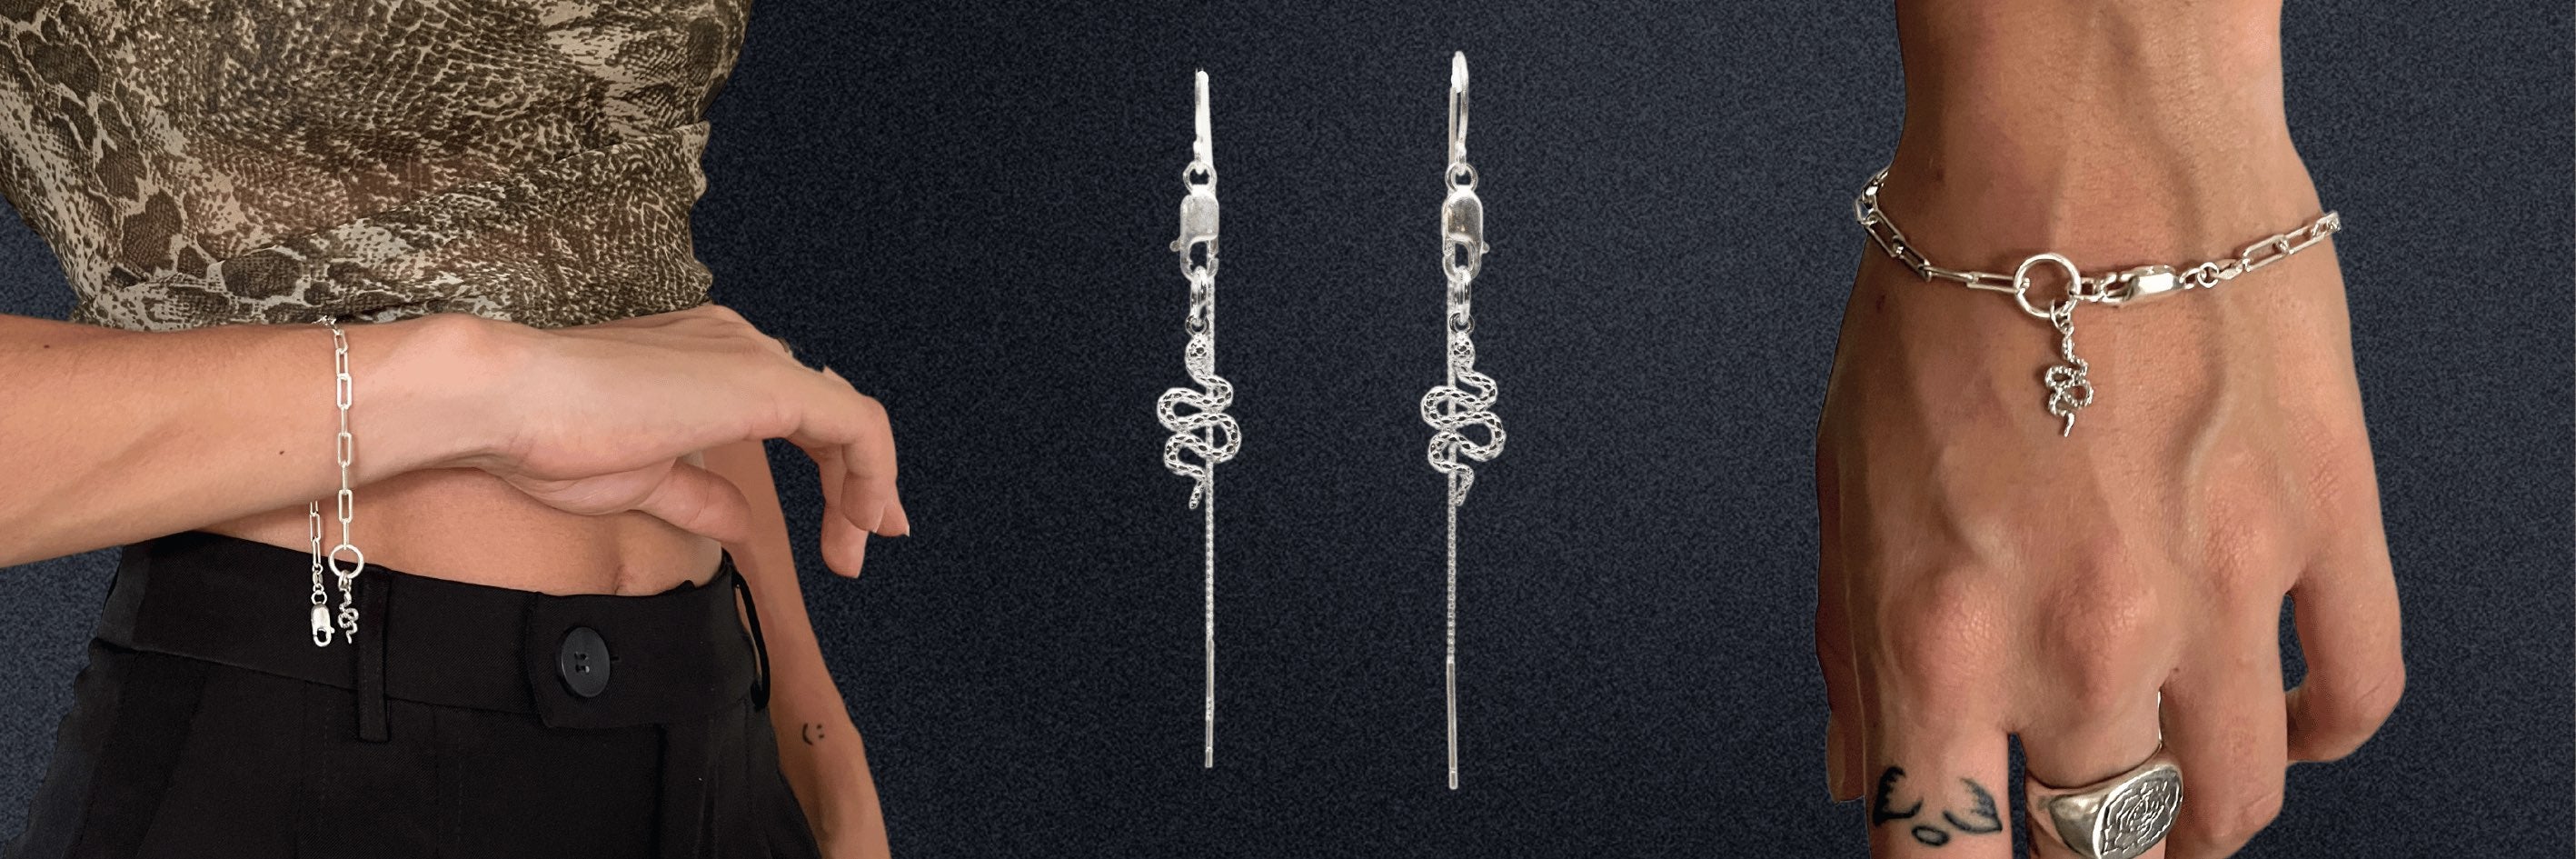 handmade sterling silver jewellery australia womens mens necklaces bracelets earrings oskye jewellery